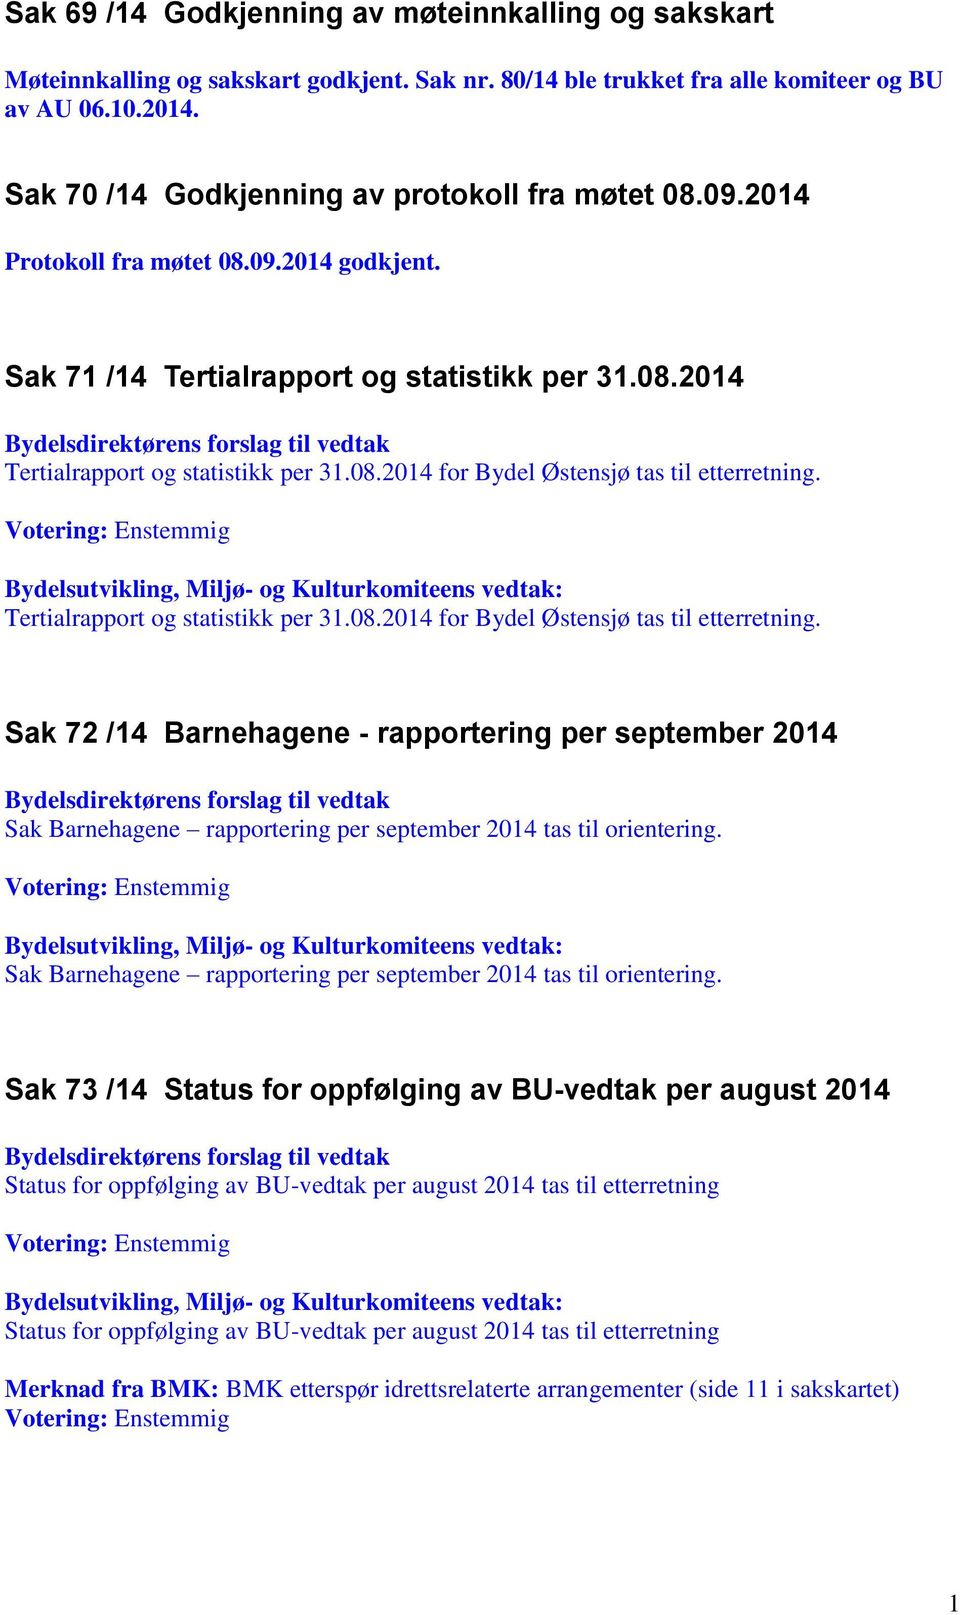 Tertialrapport og statistikk per 31.08.2014 for Bydel Østensjø tas til etterretning.